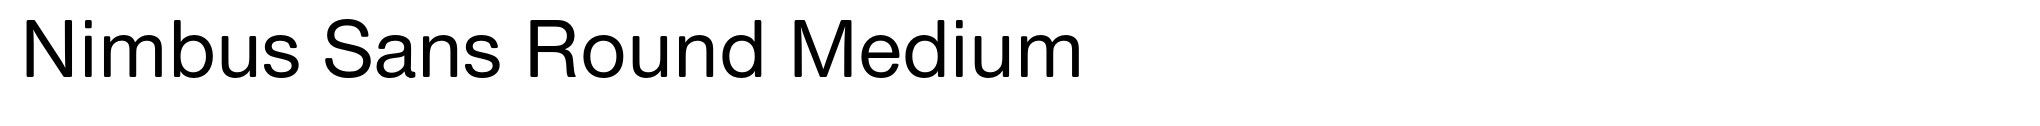 Nimbus Sans Round Medium image